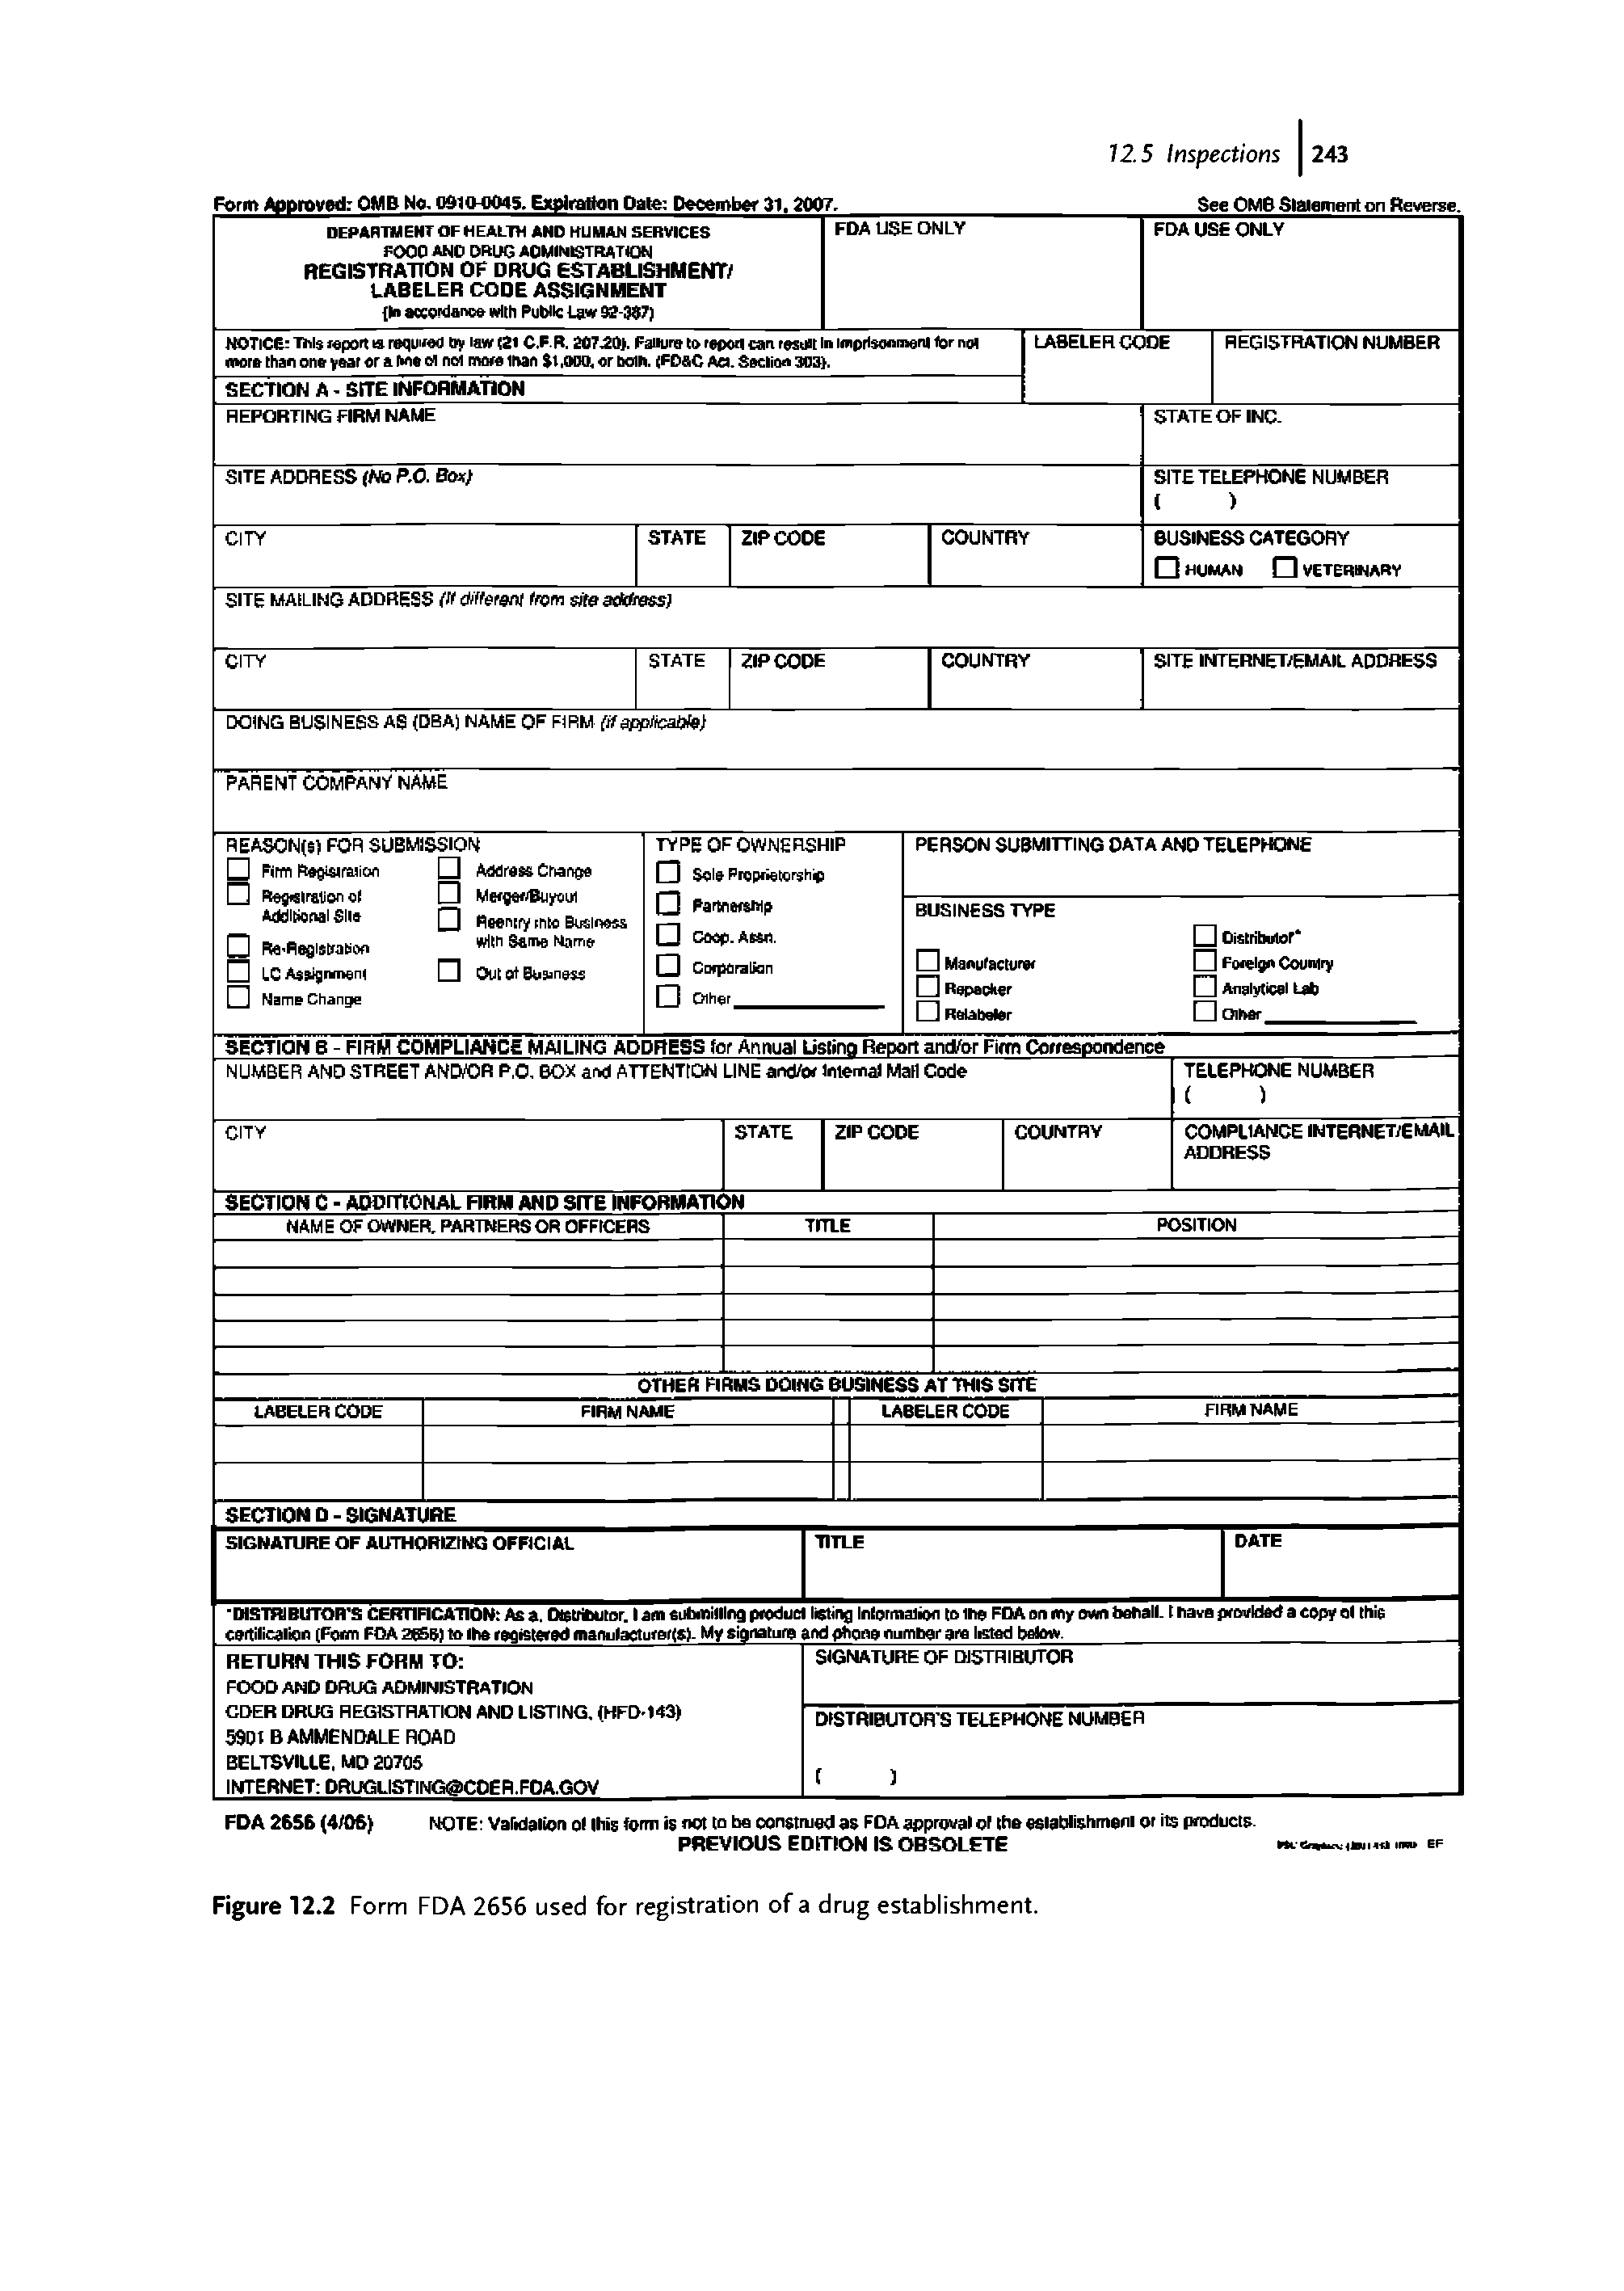 Figure 12.2 Form FDA 2656 used for registration of a drug establishment.